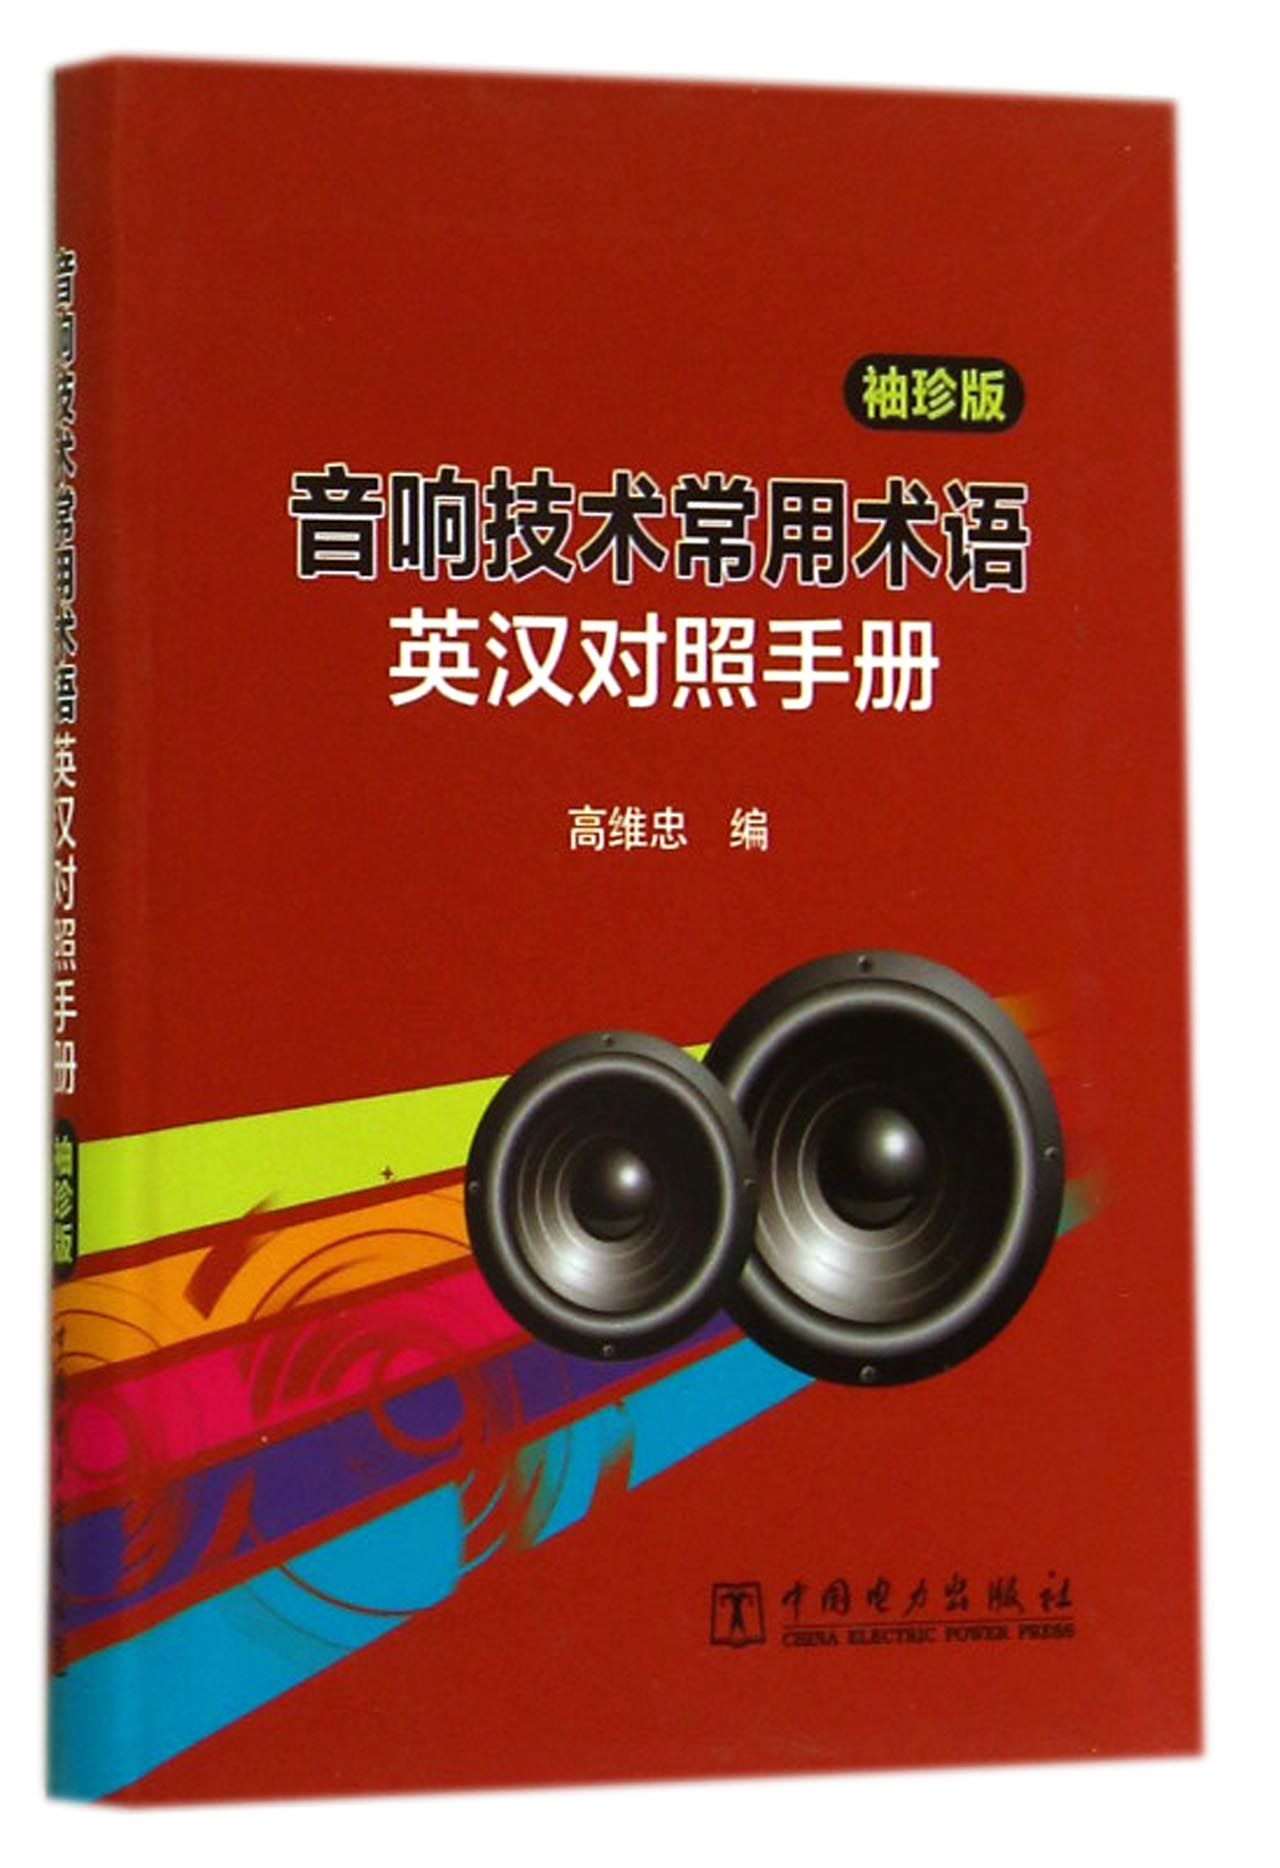 音响技术常用术语英汉对照手册(袖珍版)截图